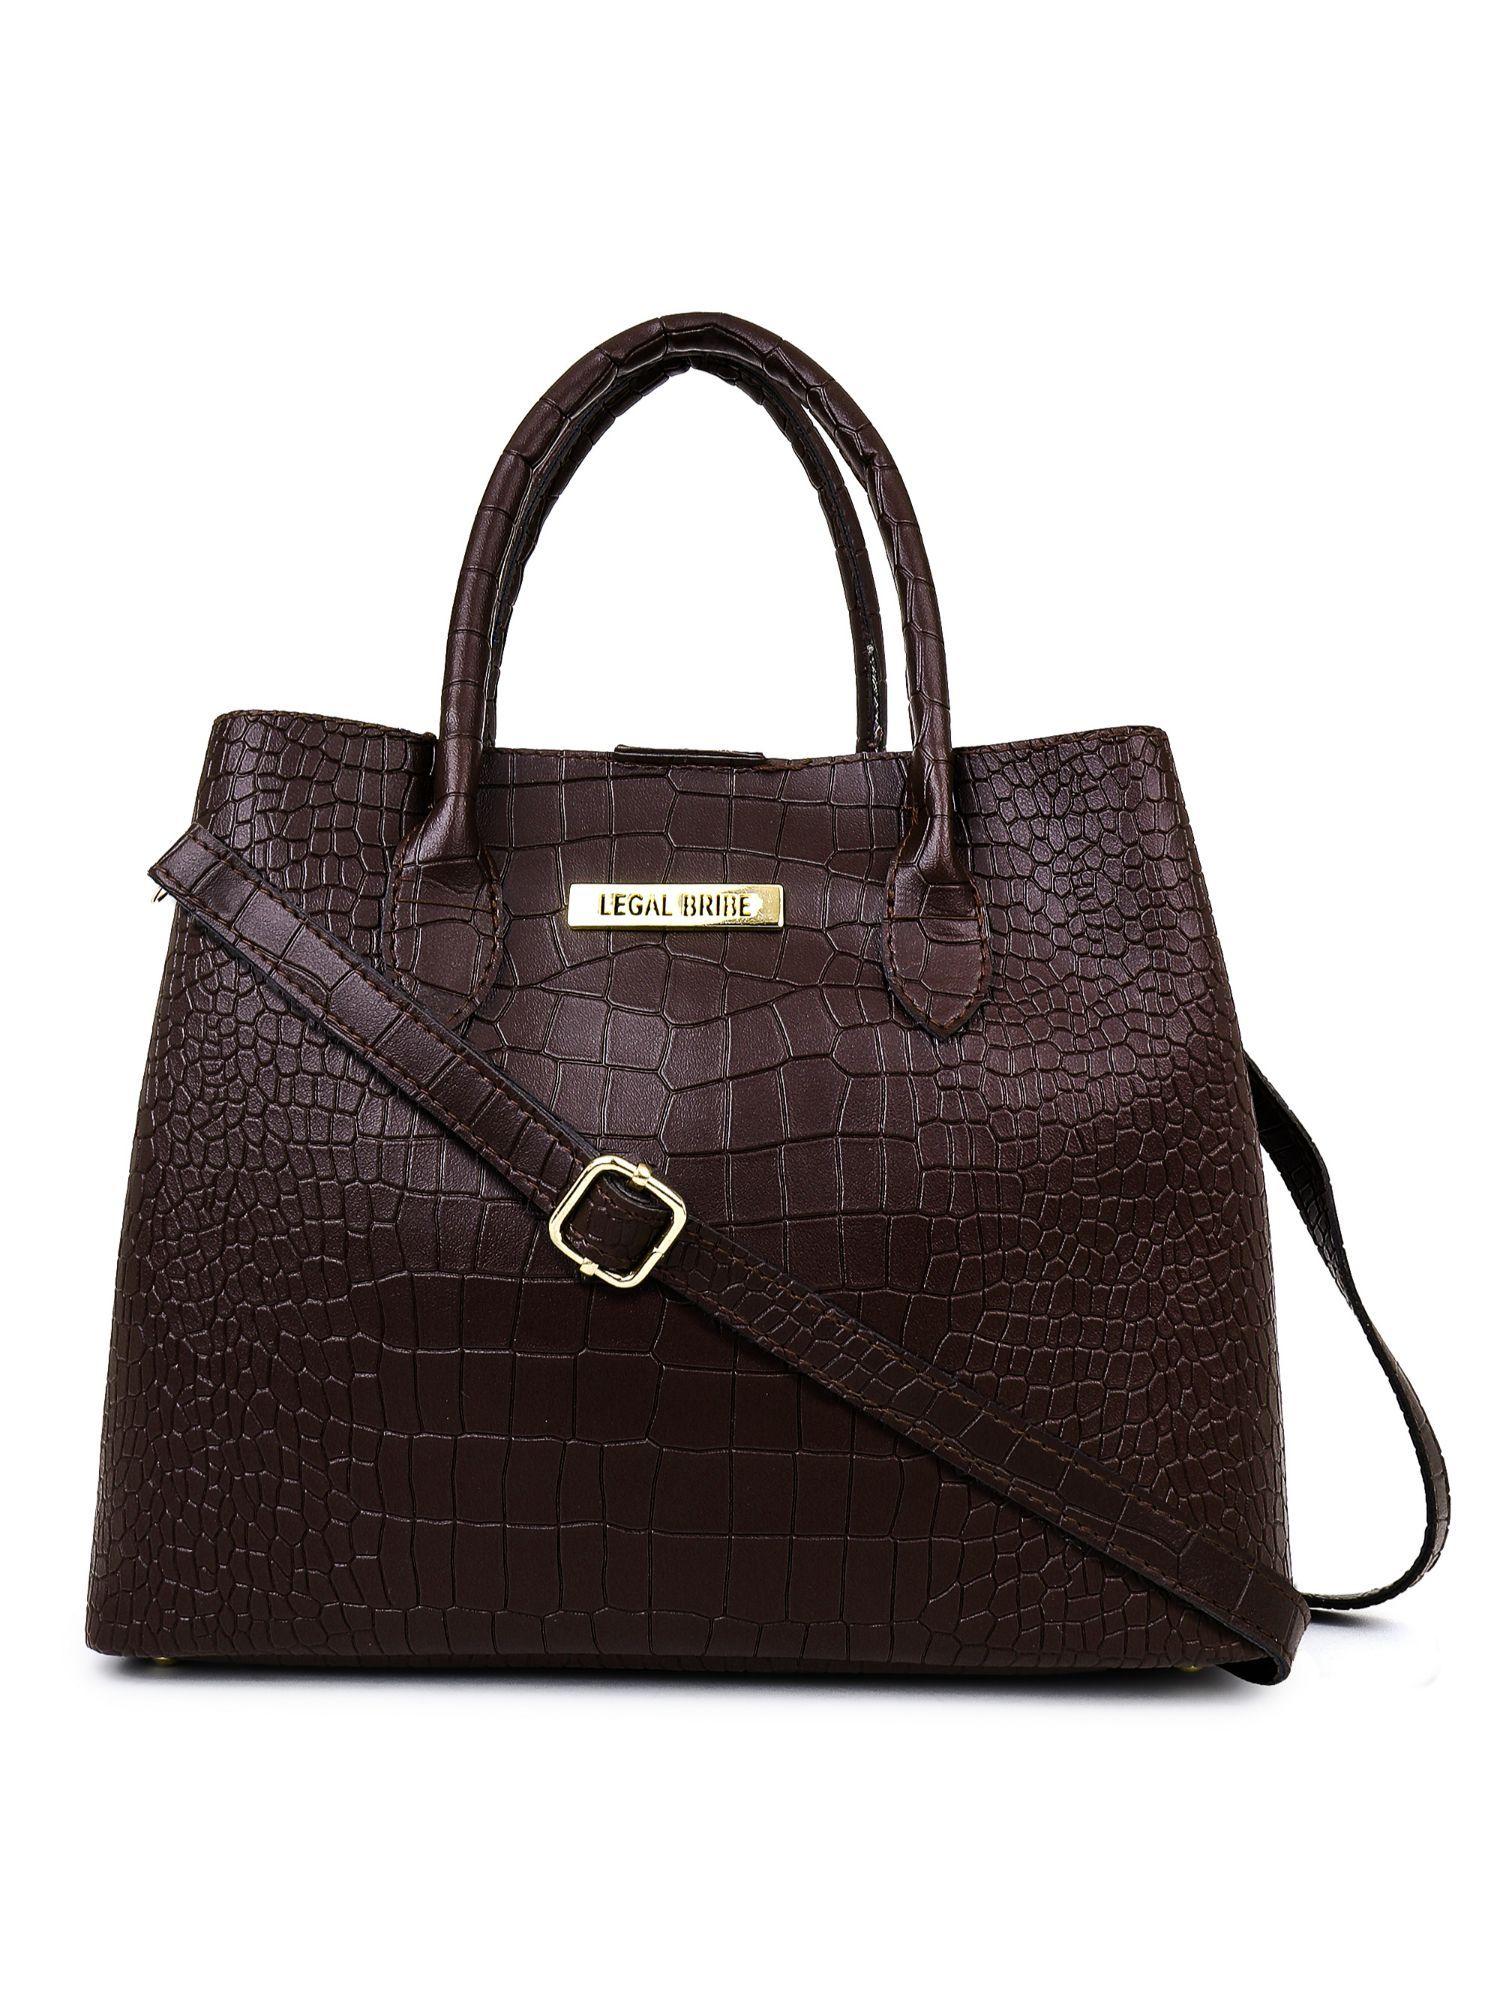 stylish crock handbag bag brown